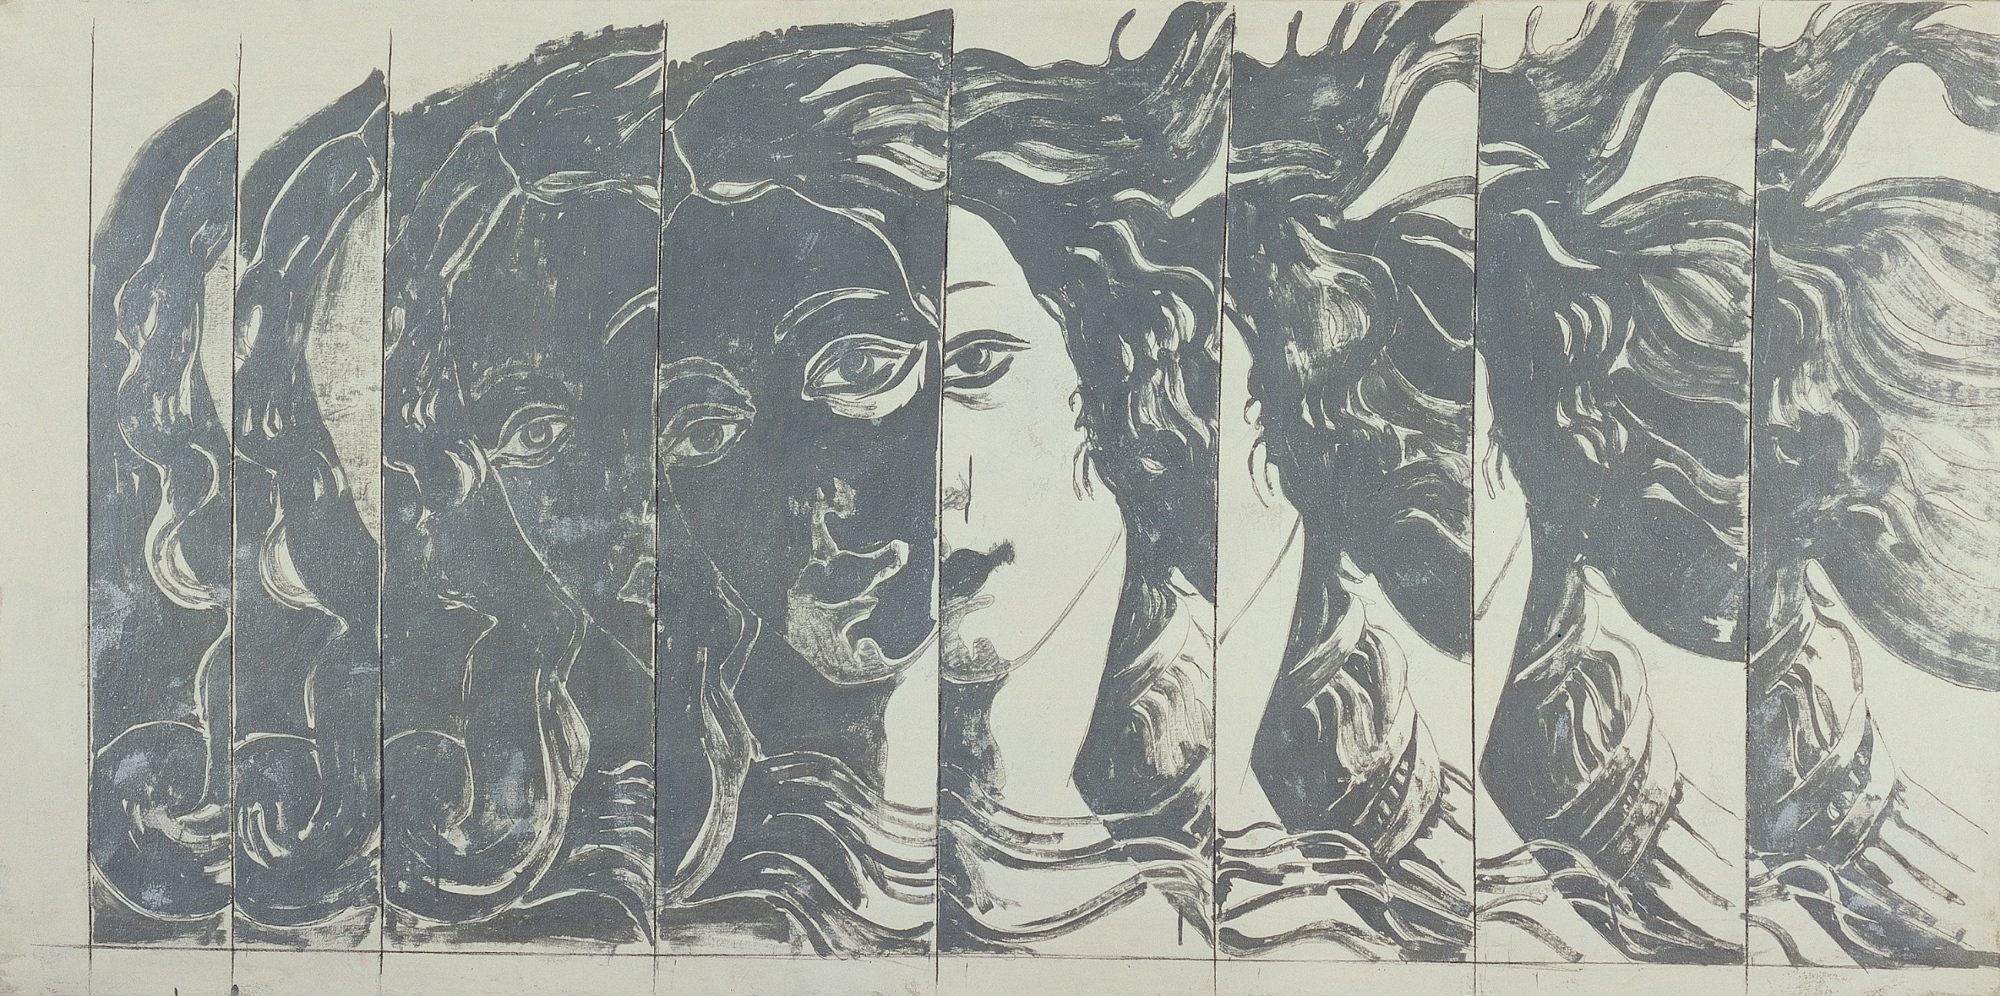 Giosetta Fioroni, Particolare della nascita di Venere, 1965, olio su tela, cm 100 x 200. Collezione Intesa Sanpaolo